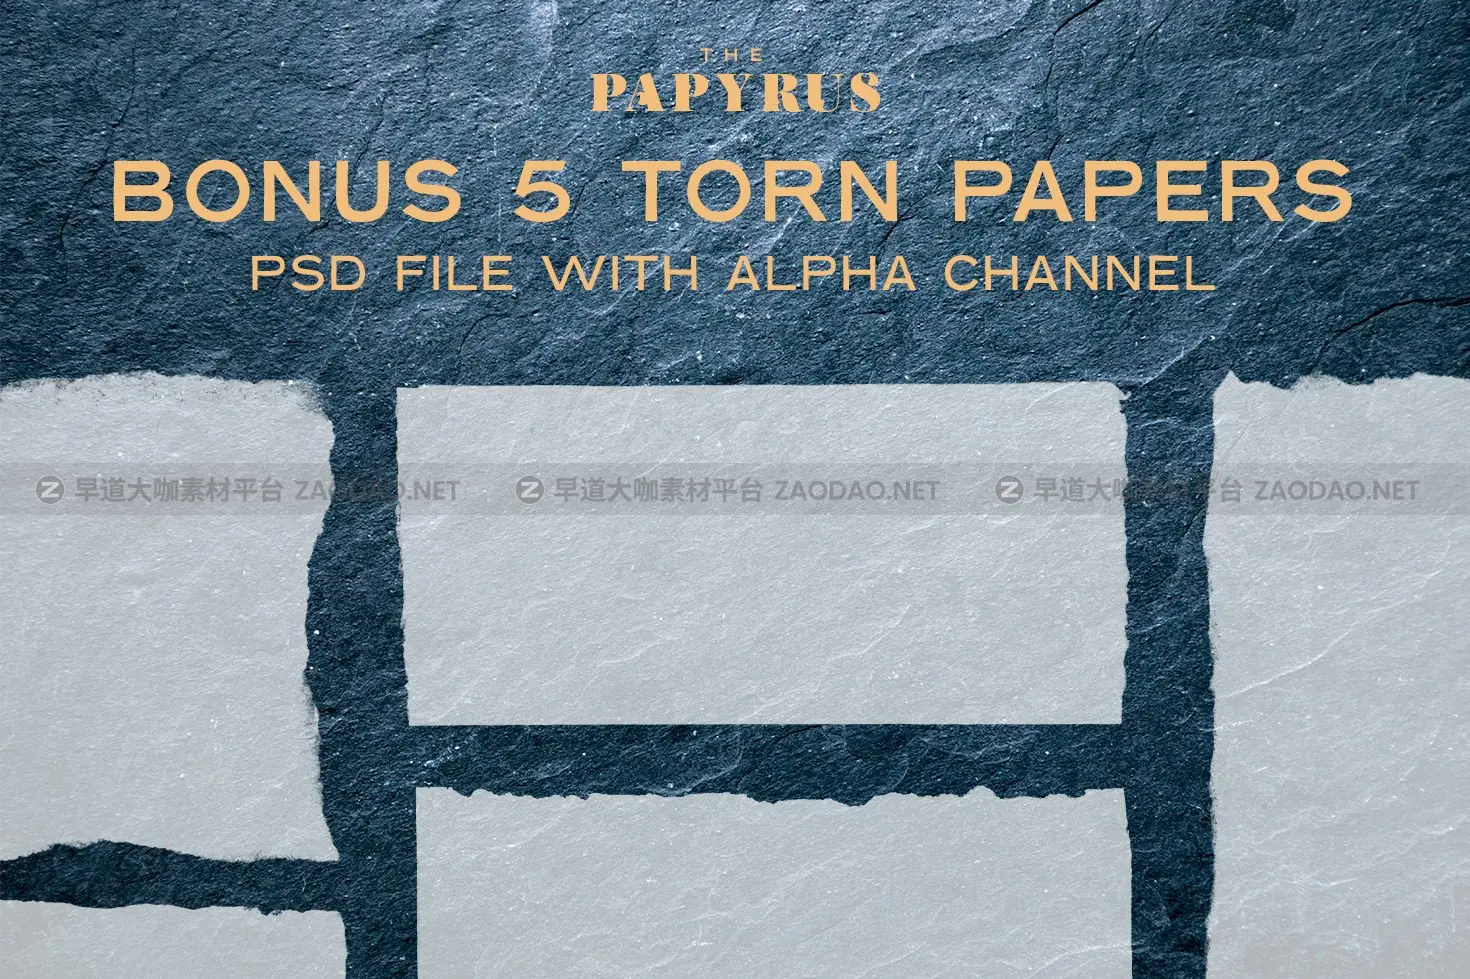 65款复古绘画莎草纸张纹理素材 The Papyrus – 65 Paper Textures插图3